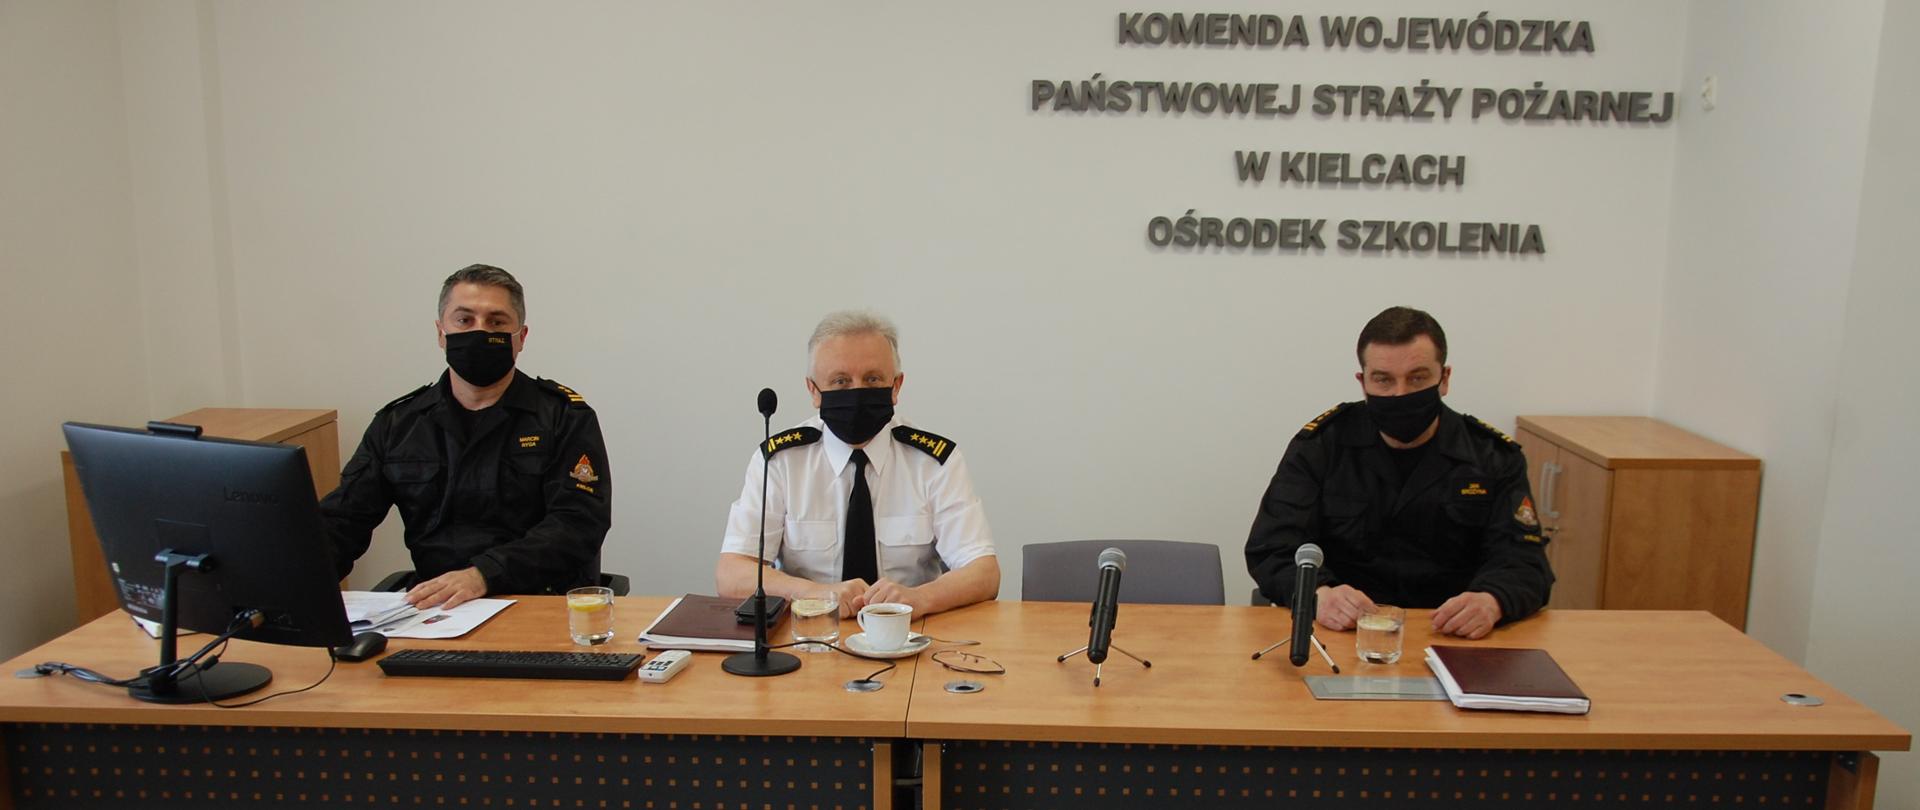 Zdjęcie przedstawia uczestników spotkania siedzących za stołem prezydialnym to jest: Zastępcę Świętokrzyskiego Komendanta Wojewódzkiego PSP oraz naczelników Ośrodka Szkolenia i Wydziału Operacyjnego KW PSP w Kielcach w umundurowaniu służbowym.
